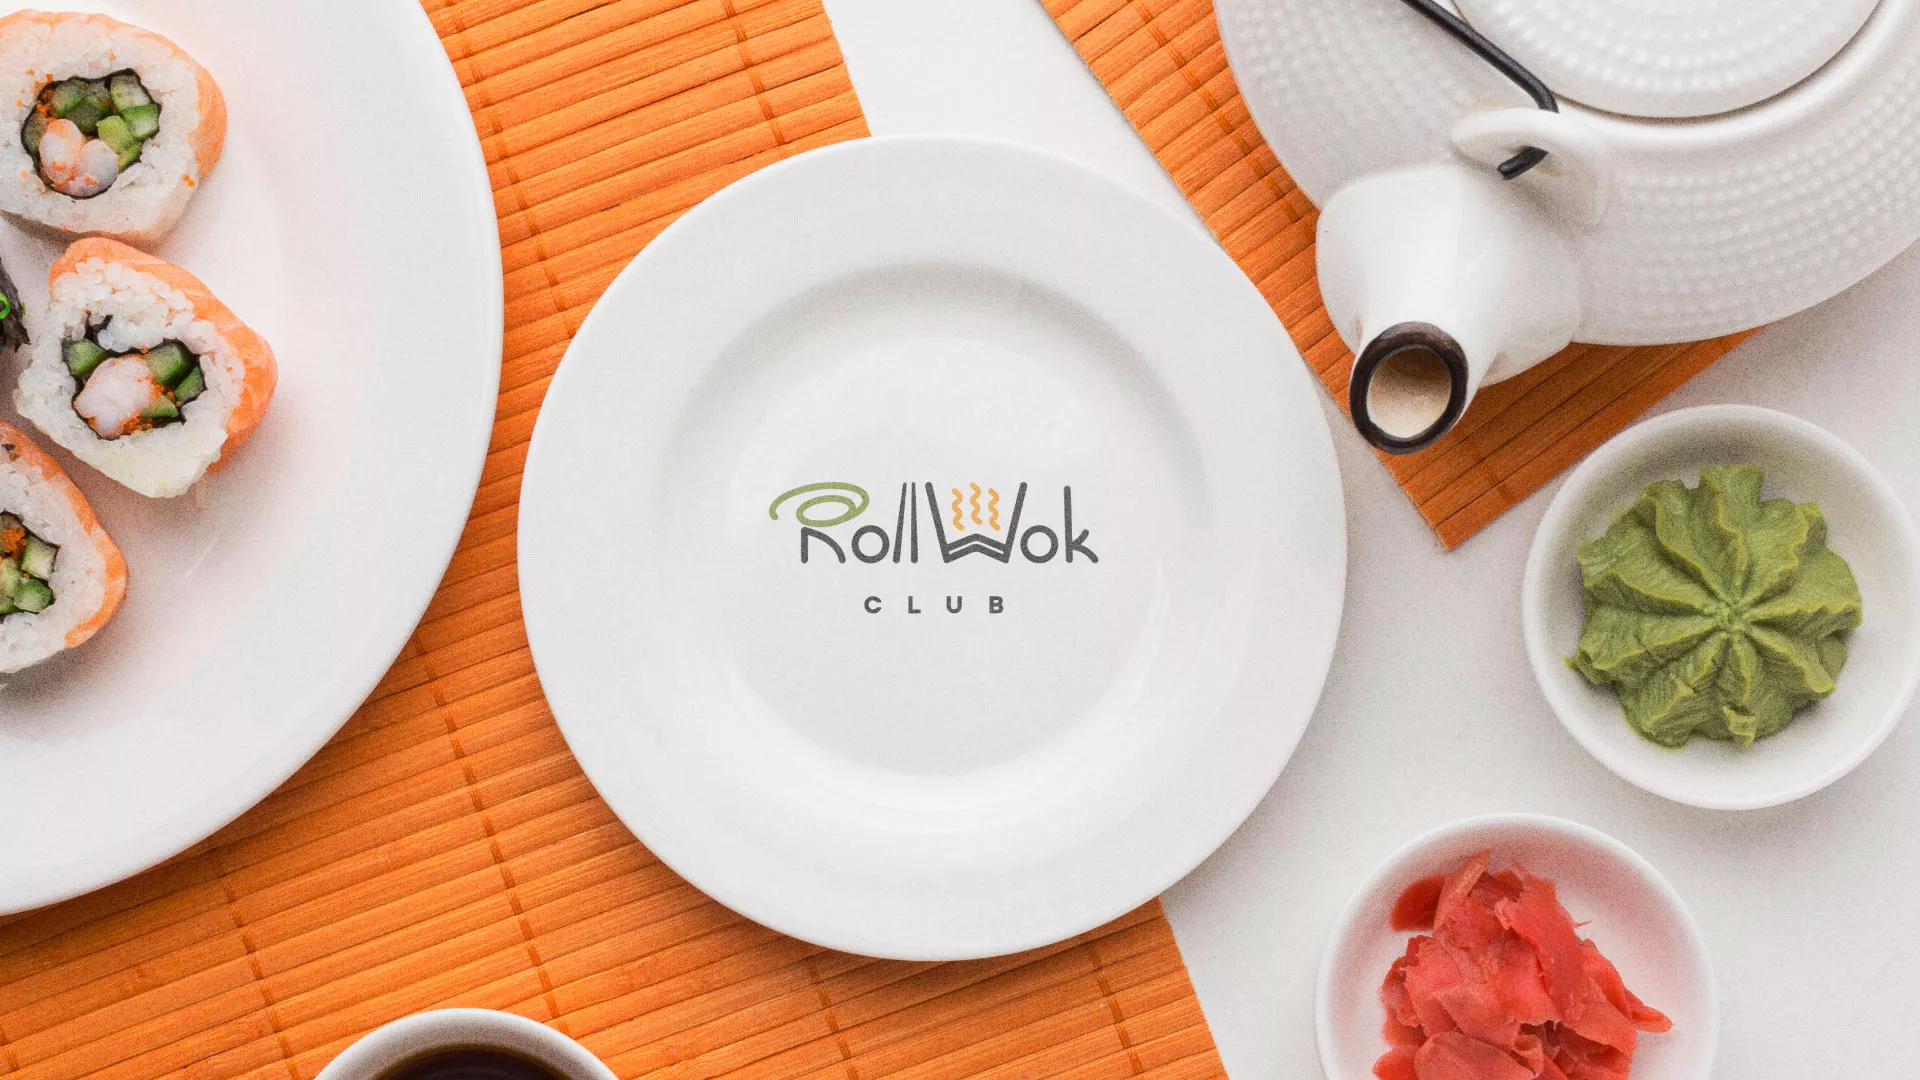 Разработка логотипа и фирменного стиля суши-бара «Roll Wok Club» в Красавино